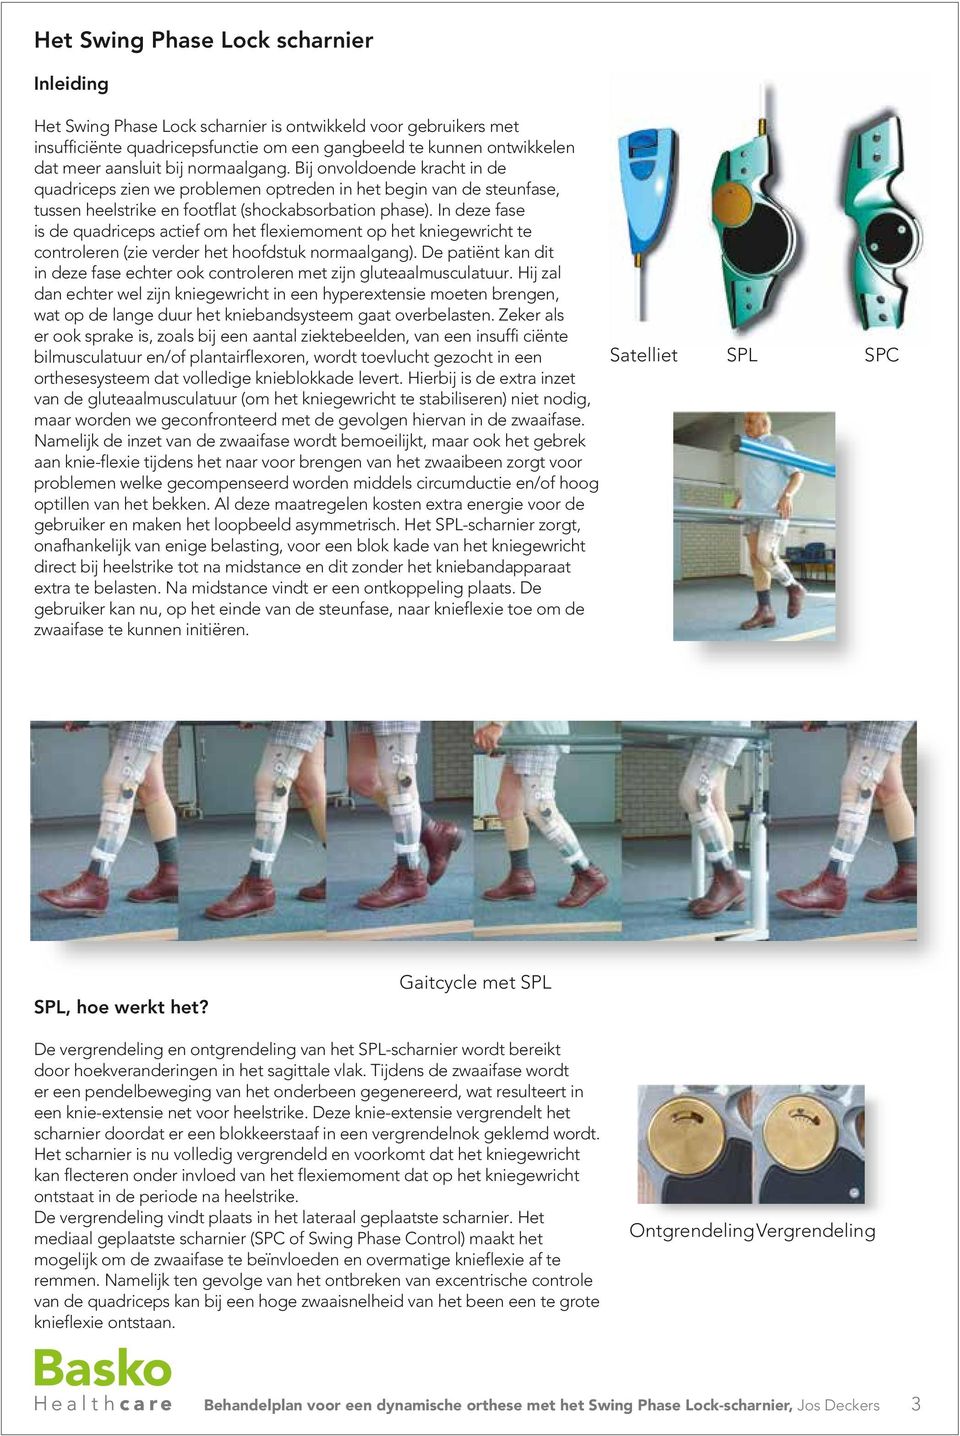 In deze fase is de quadriceps actief om het flexiemoment op het kniegewricht te controleren (zie verder het hoofdstuk normaalgang).